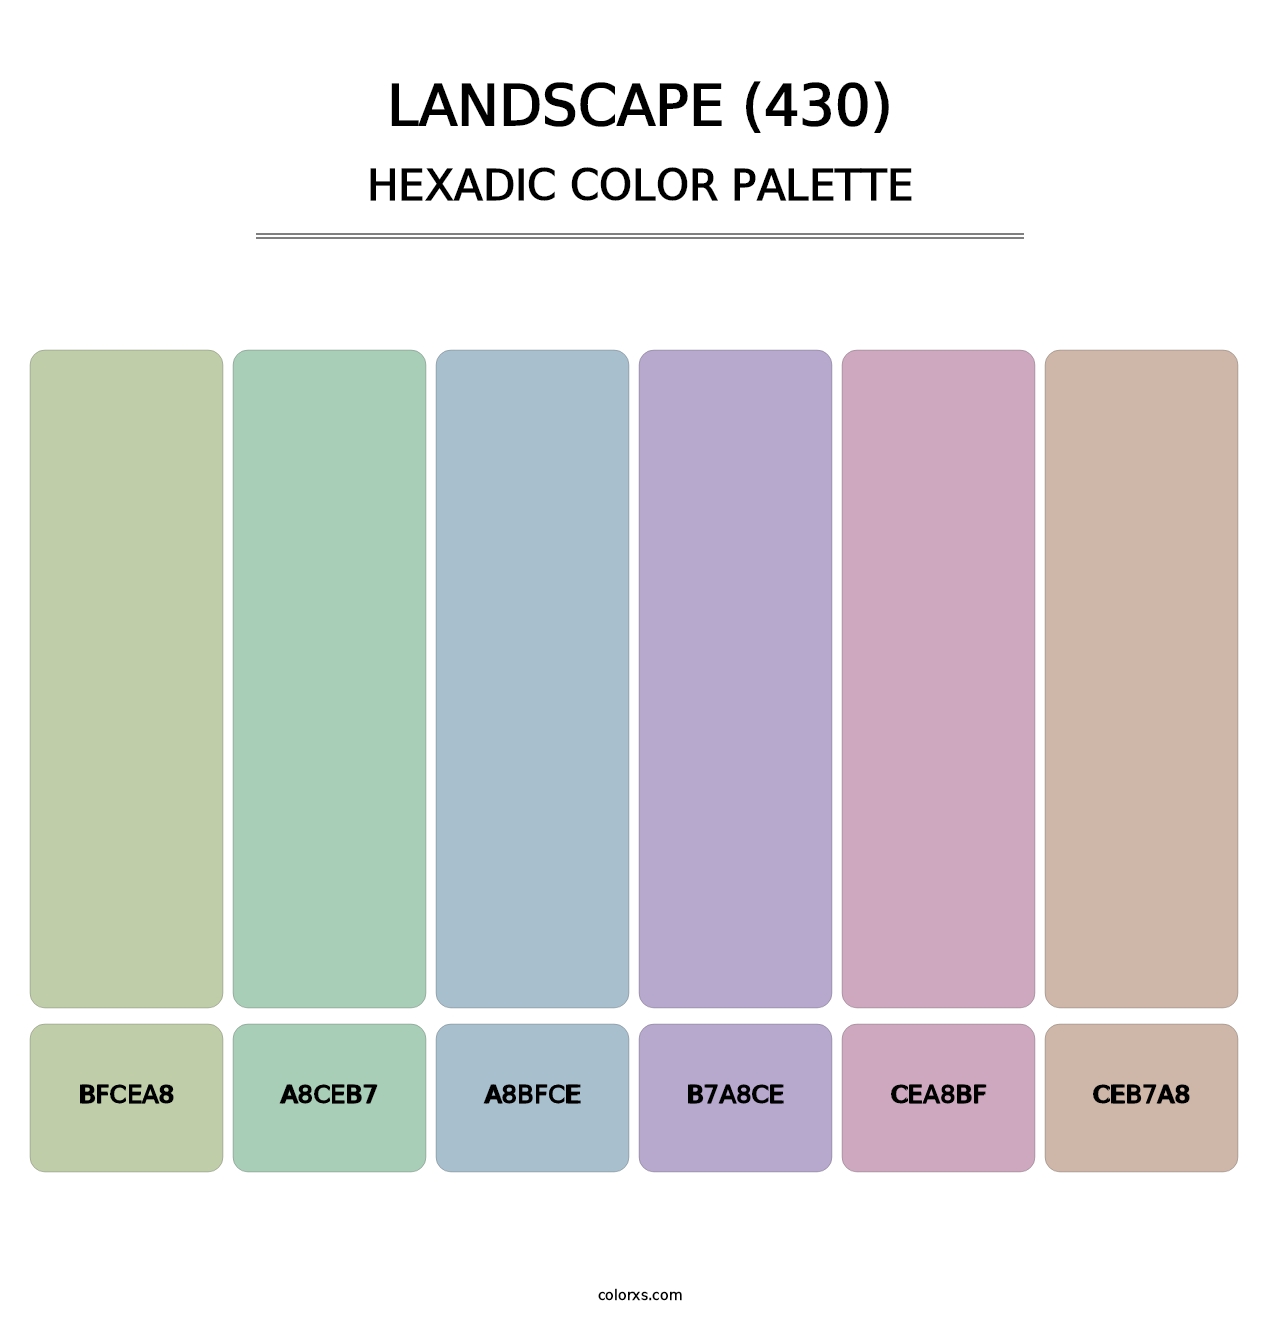 Landscape (430) - Hexadic Color Palette